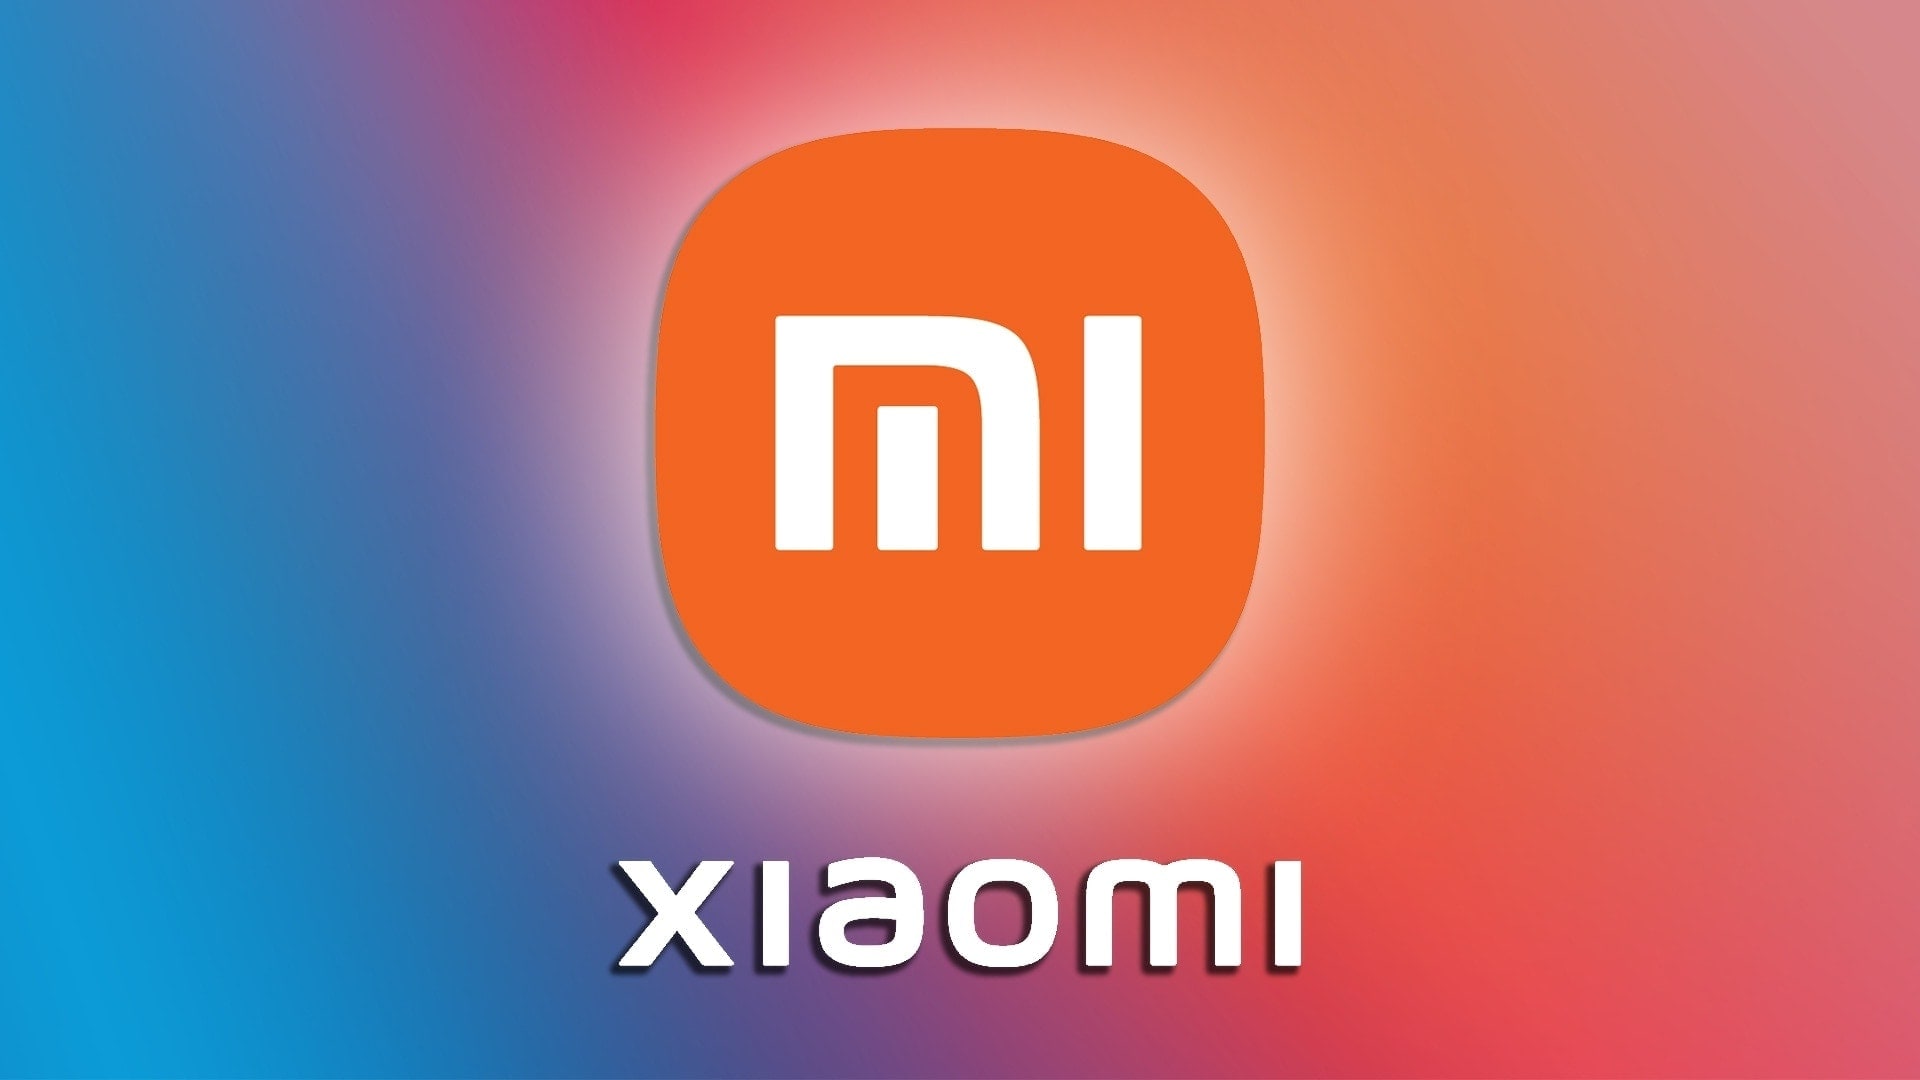 Xiaomi è in gran forma: si prende la corona nel mercato smartphone 5G